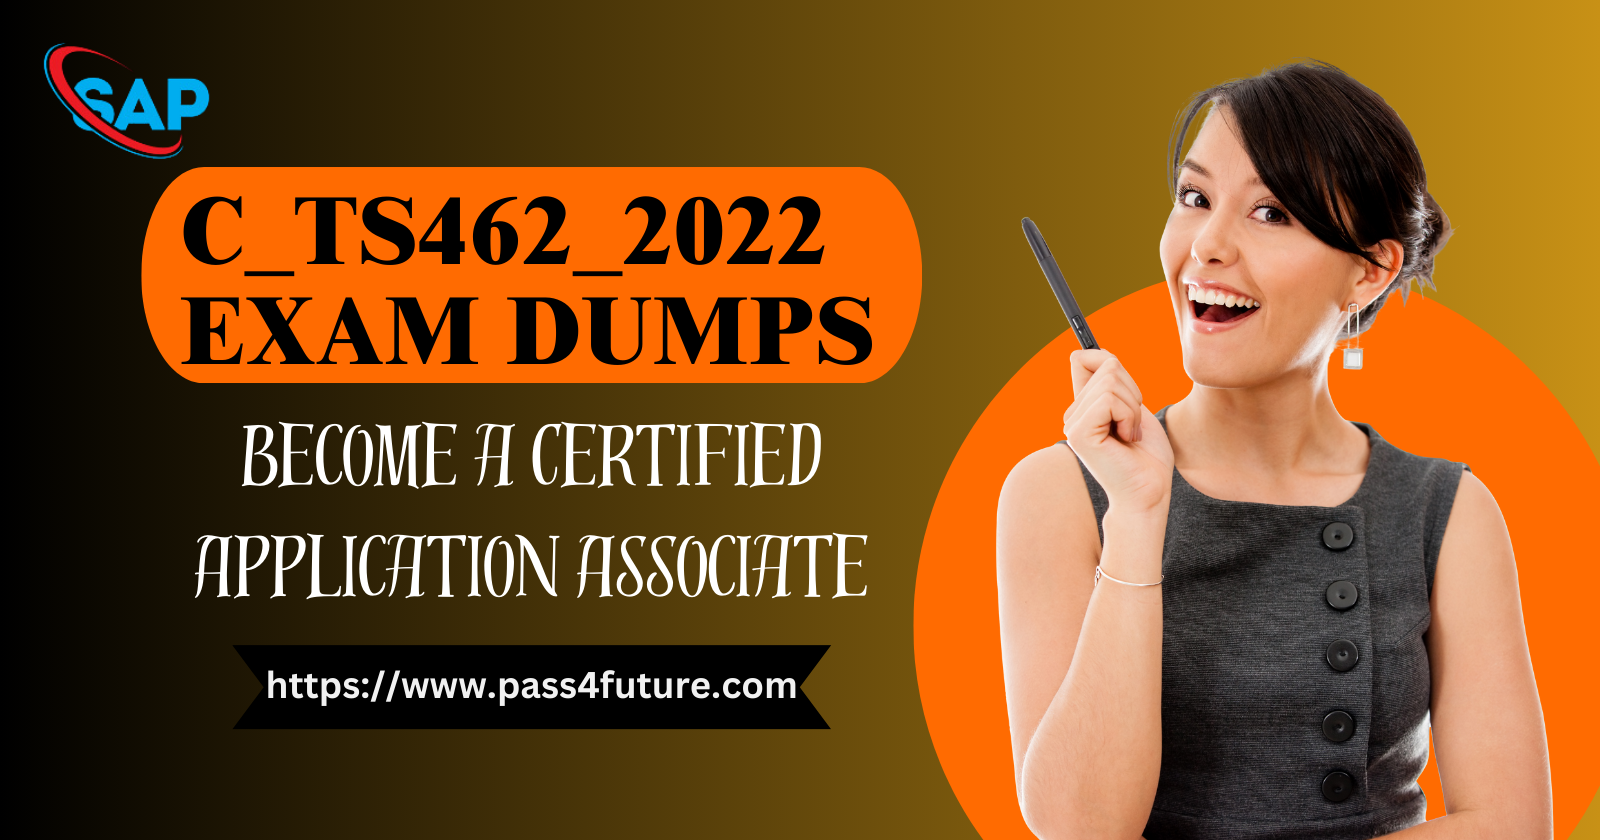 SAP C_TS462_2022 Exam Dumps | Become Certified Application Associate